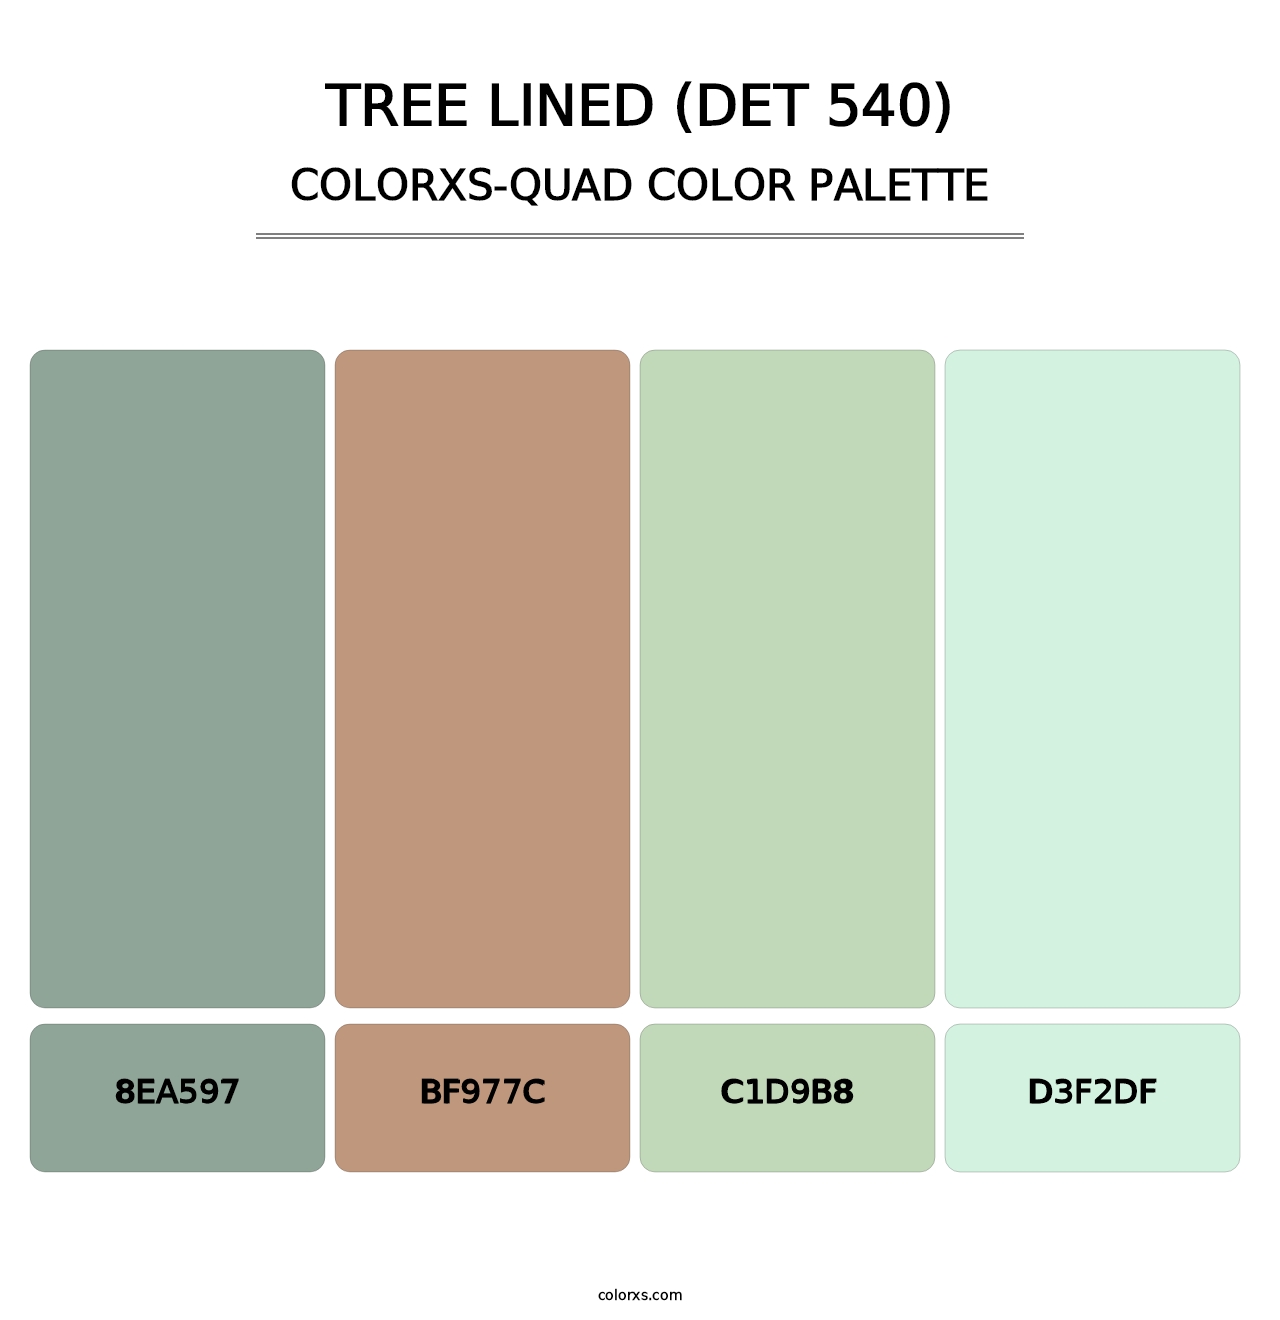 Tree Lined (DET 540) - Colorxs Quad Palette